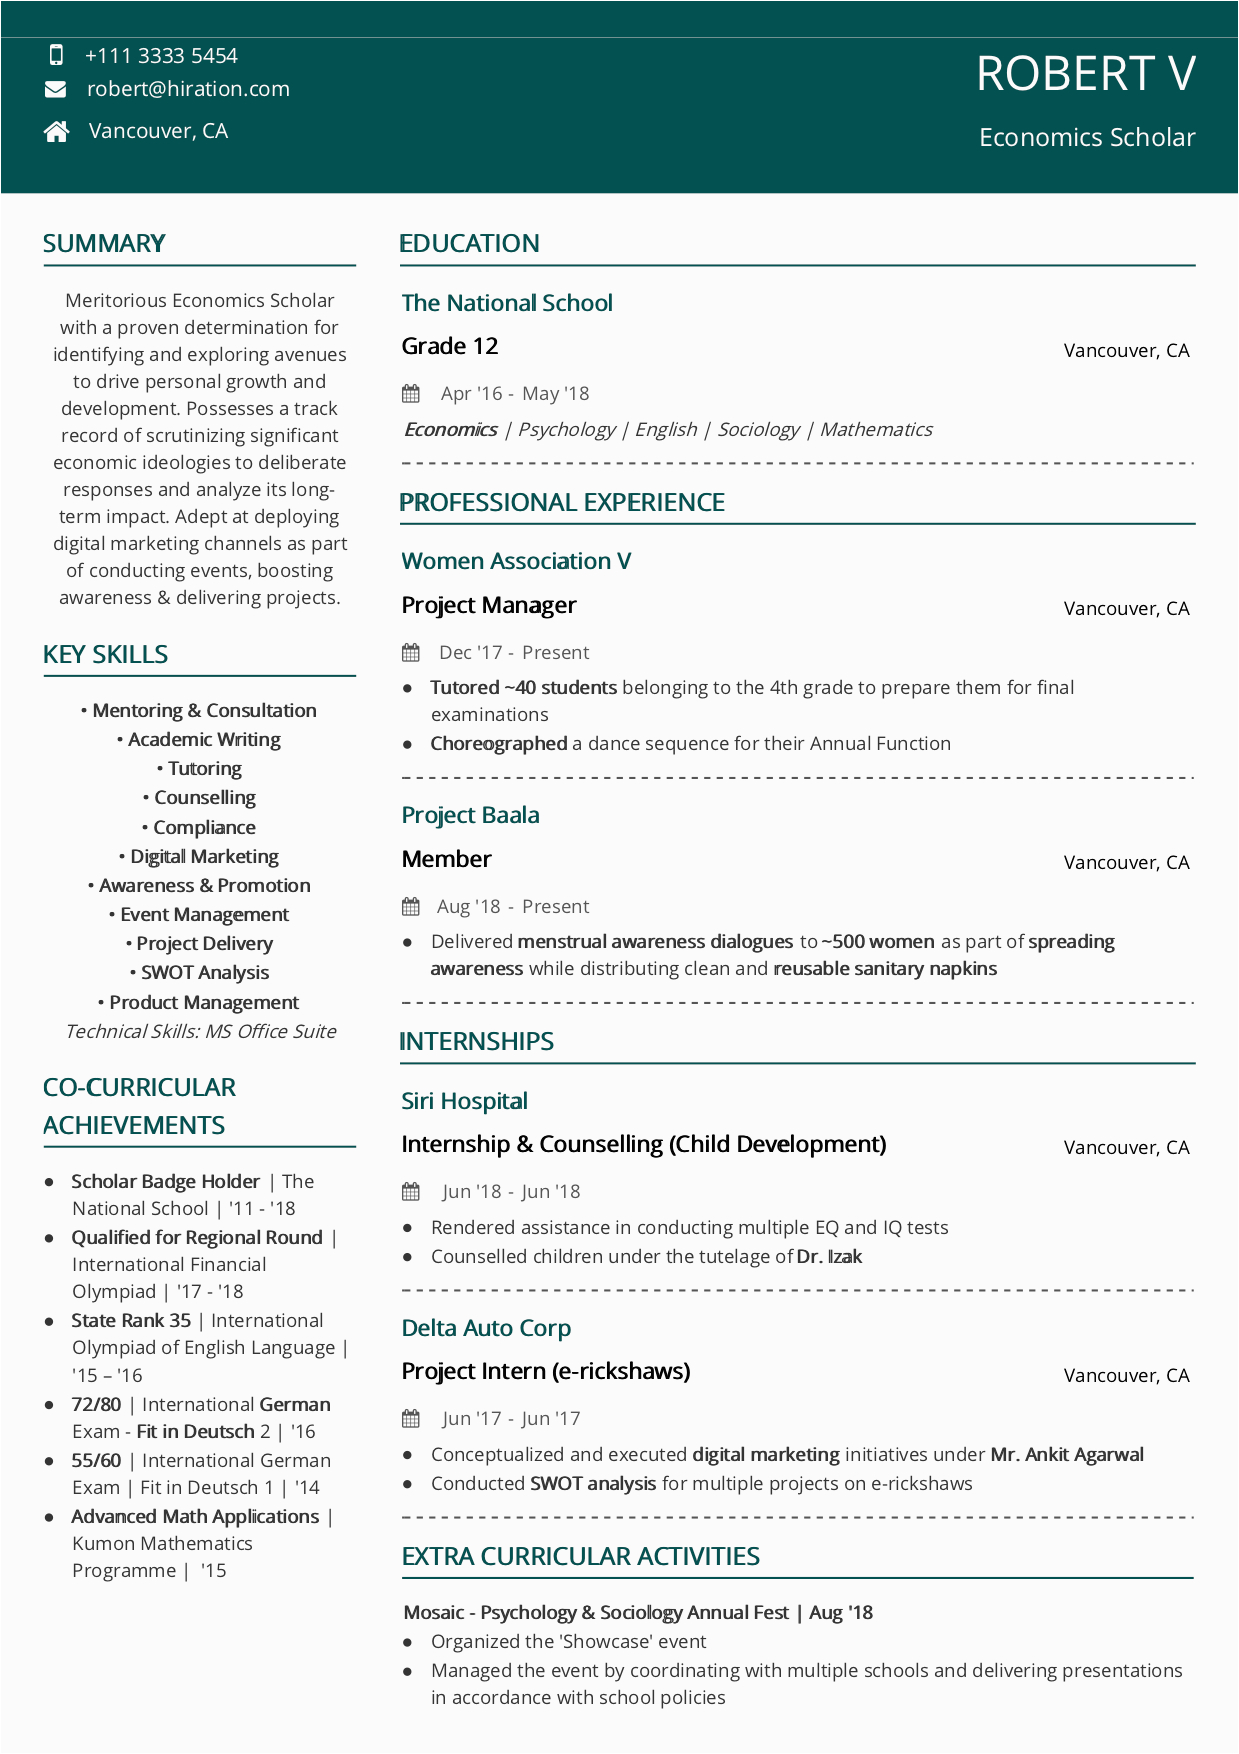 Sample Student Resume for Scholarship Application Scholarship Resume [2020 Guide with Scholarship Examples